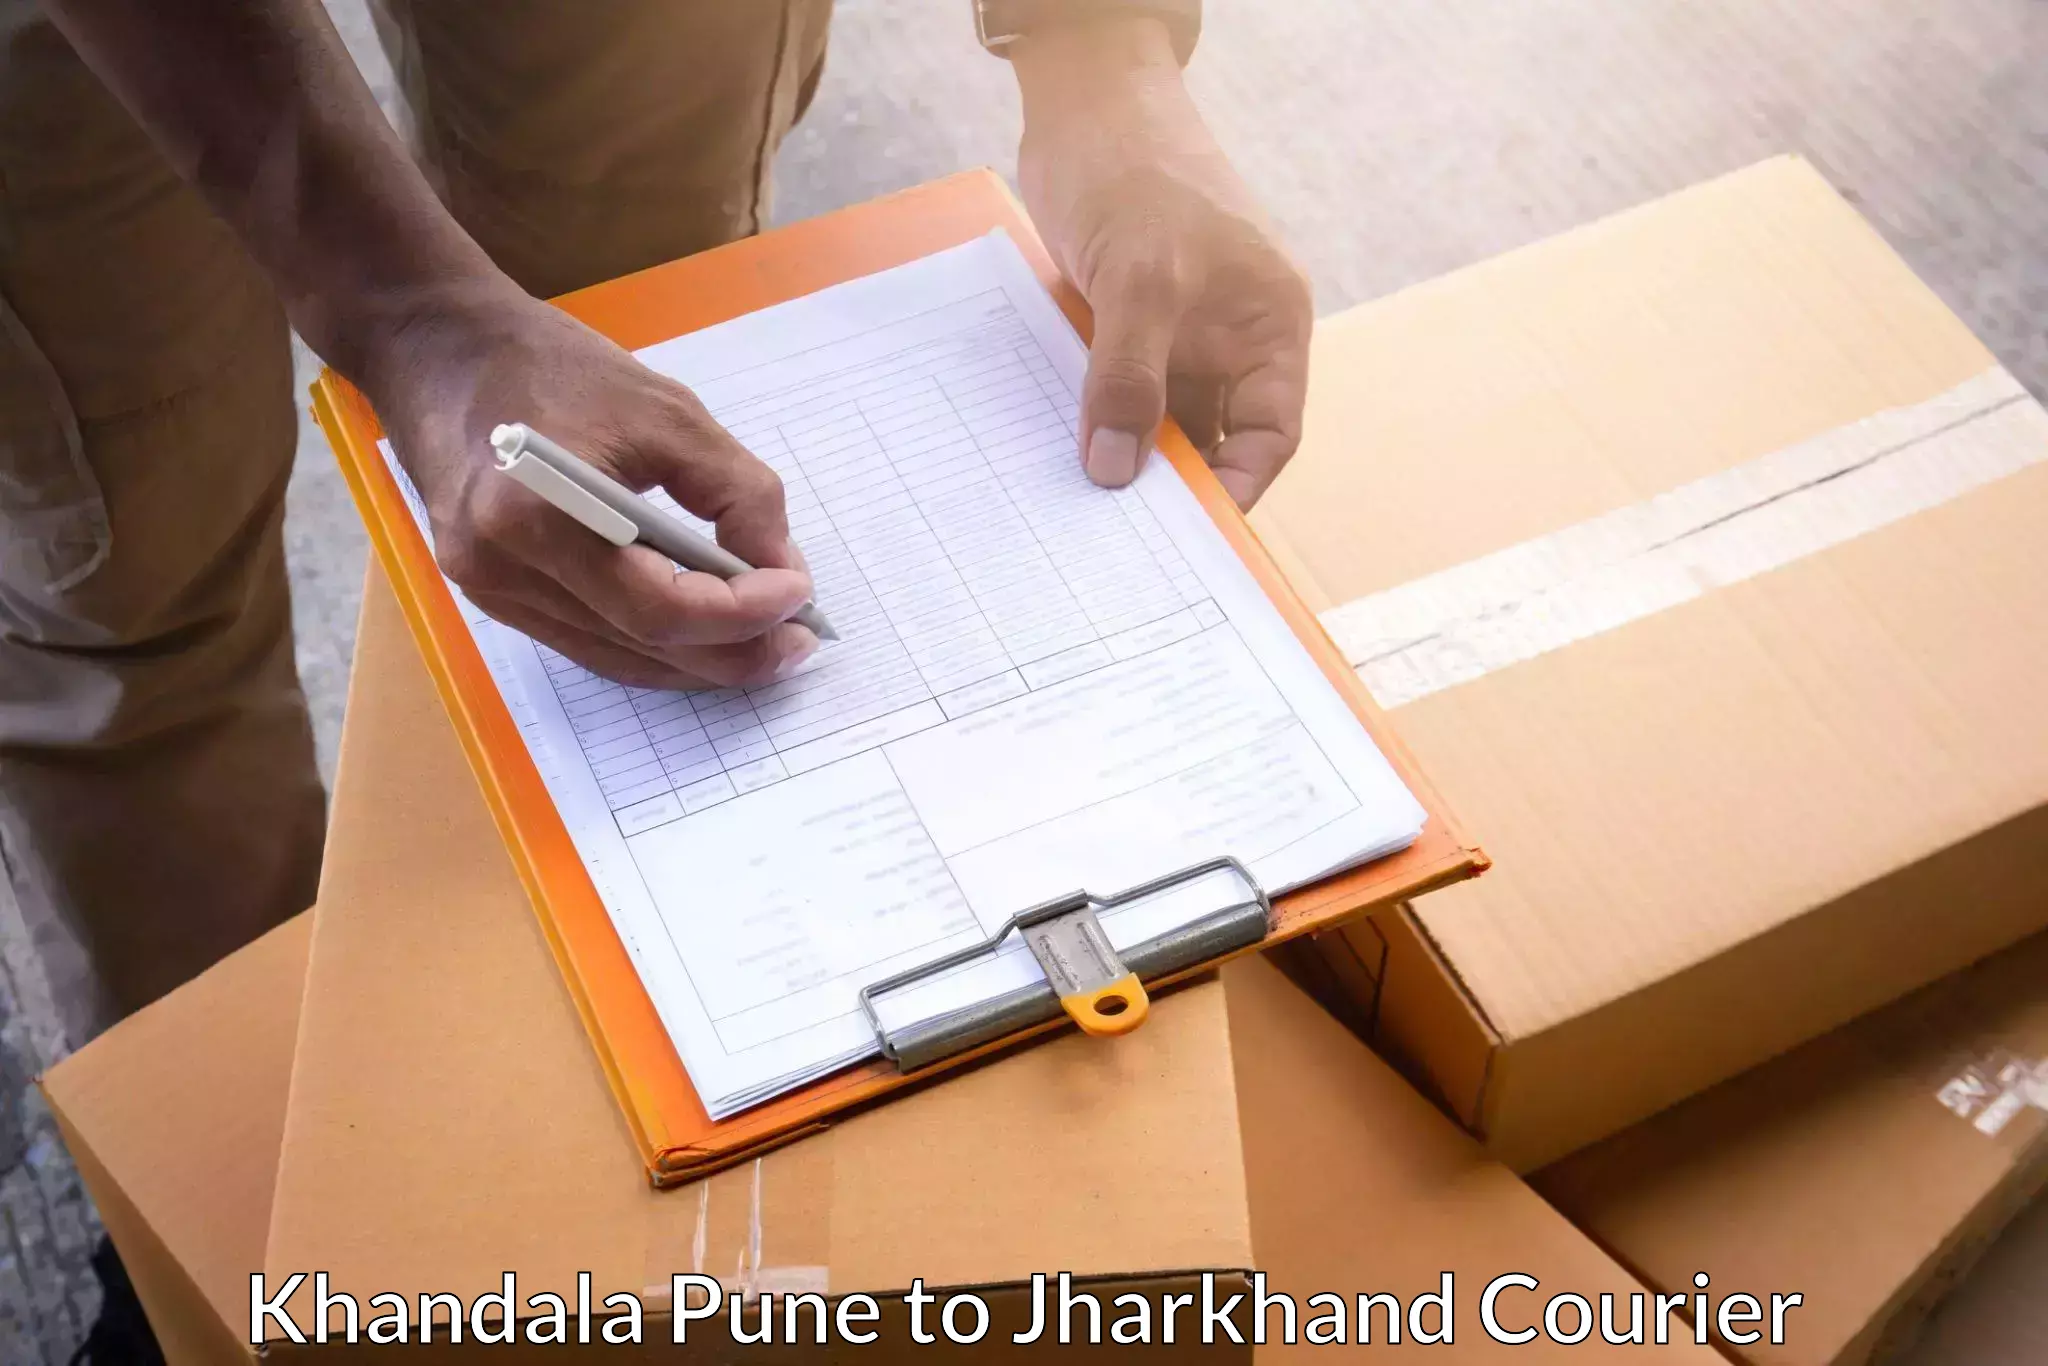 Local delivery service Khandala Pune to Lohardaga